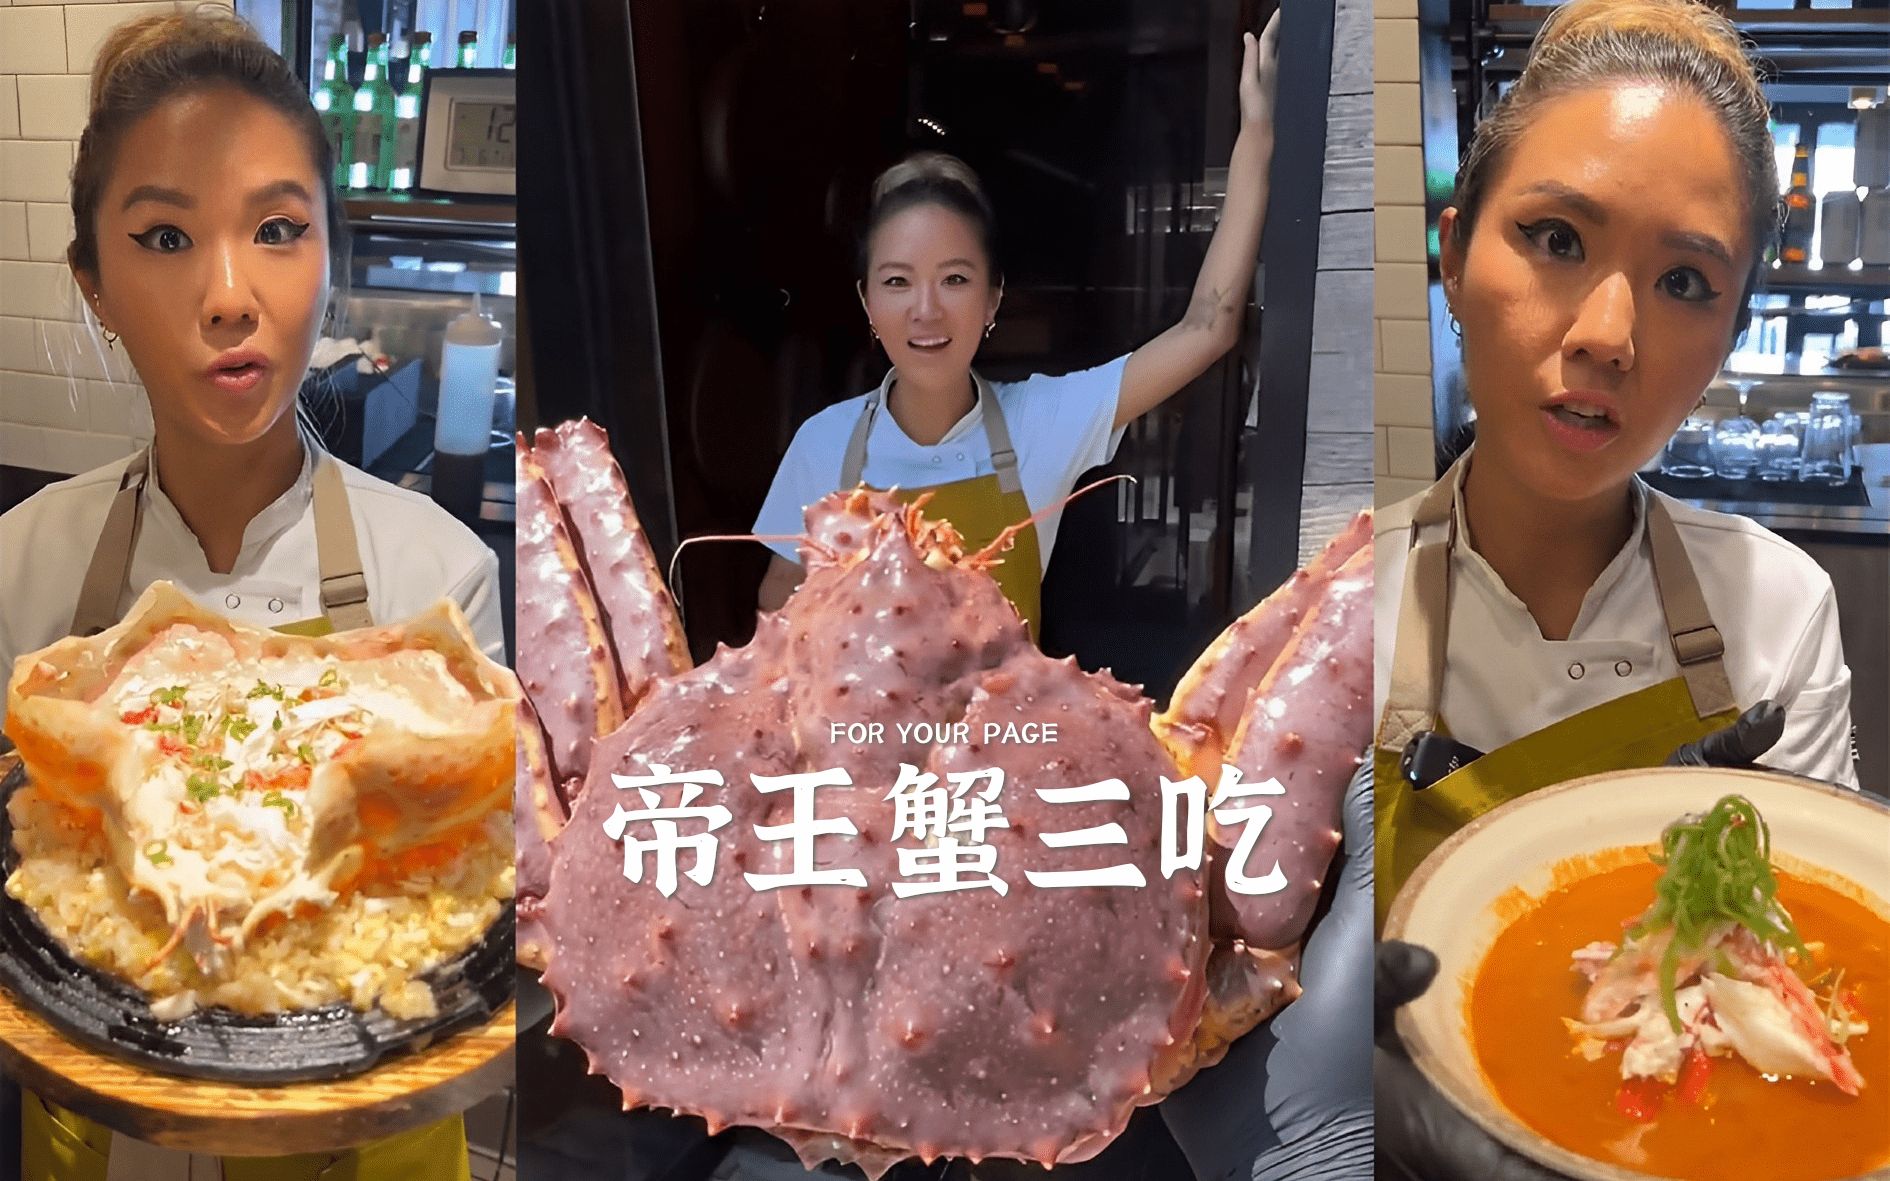 帝王蟹三吃 🦀 每种做法都能给你带来不同味蕾体验!!!!